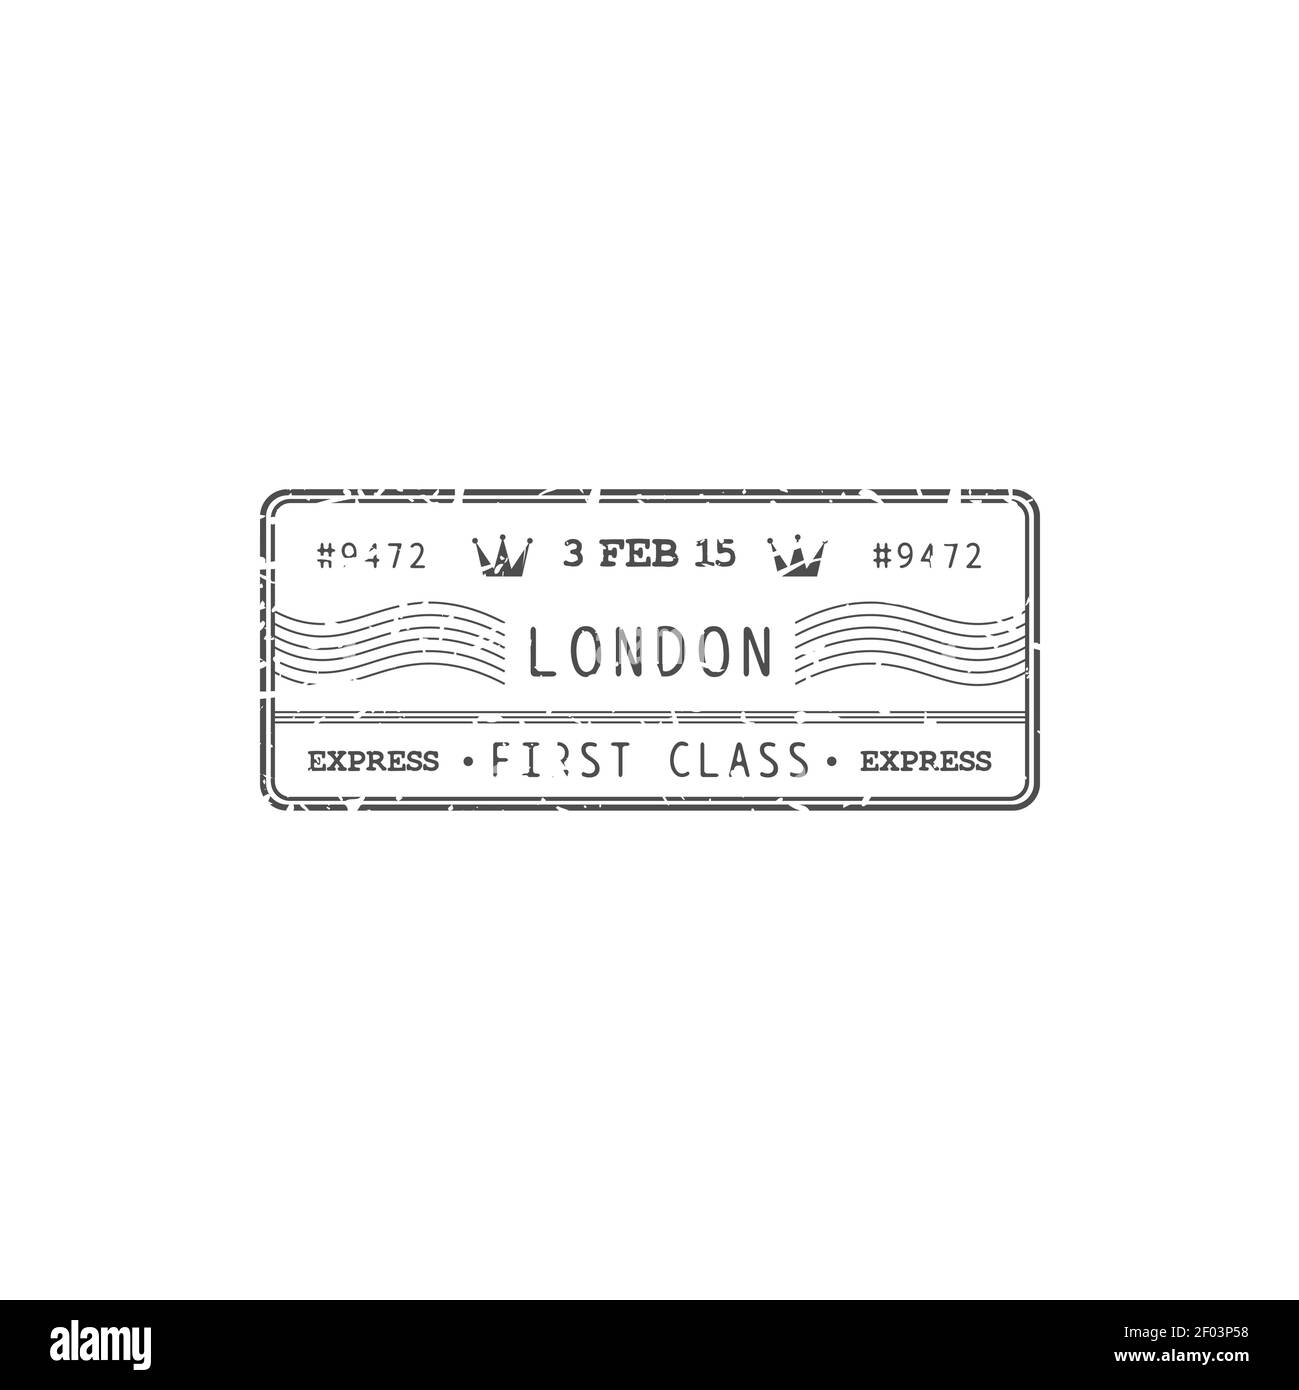 Courrier aérien du Royaume-Uni, timbre londonien isolé de la poste royale avec signe de livraison express de première classe. Icône de grunge vectoriel, marque de poste. Transport par correspondance postale Illustration de Vecteur